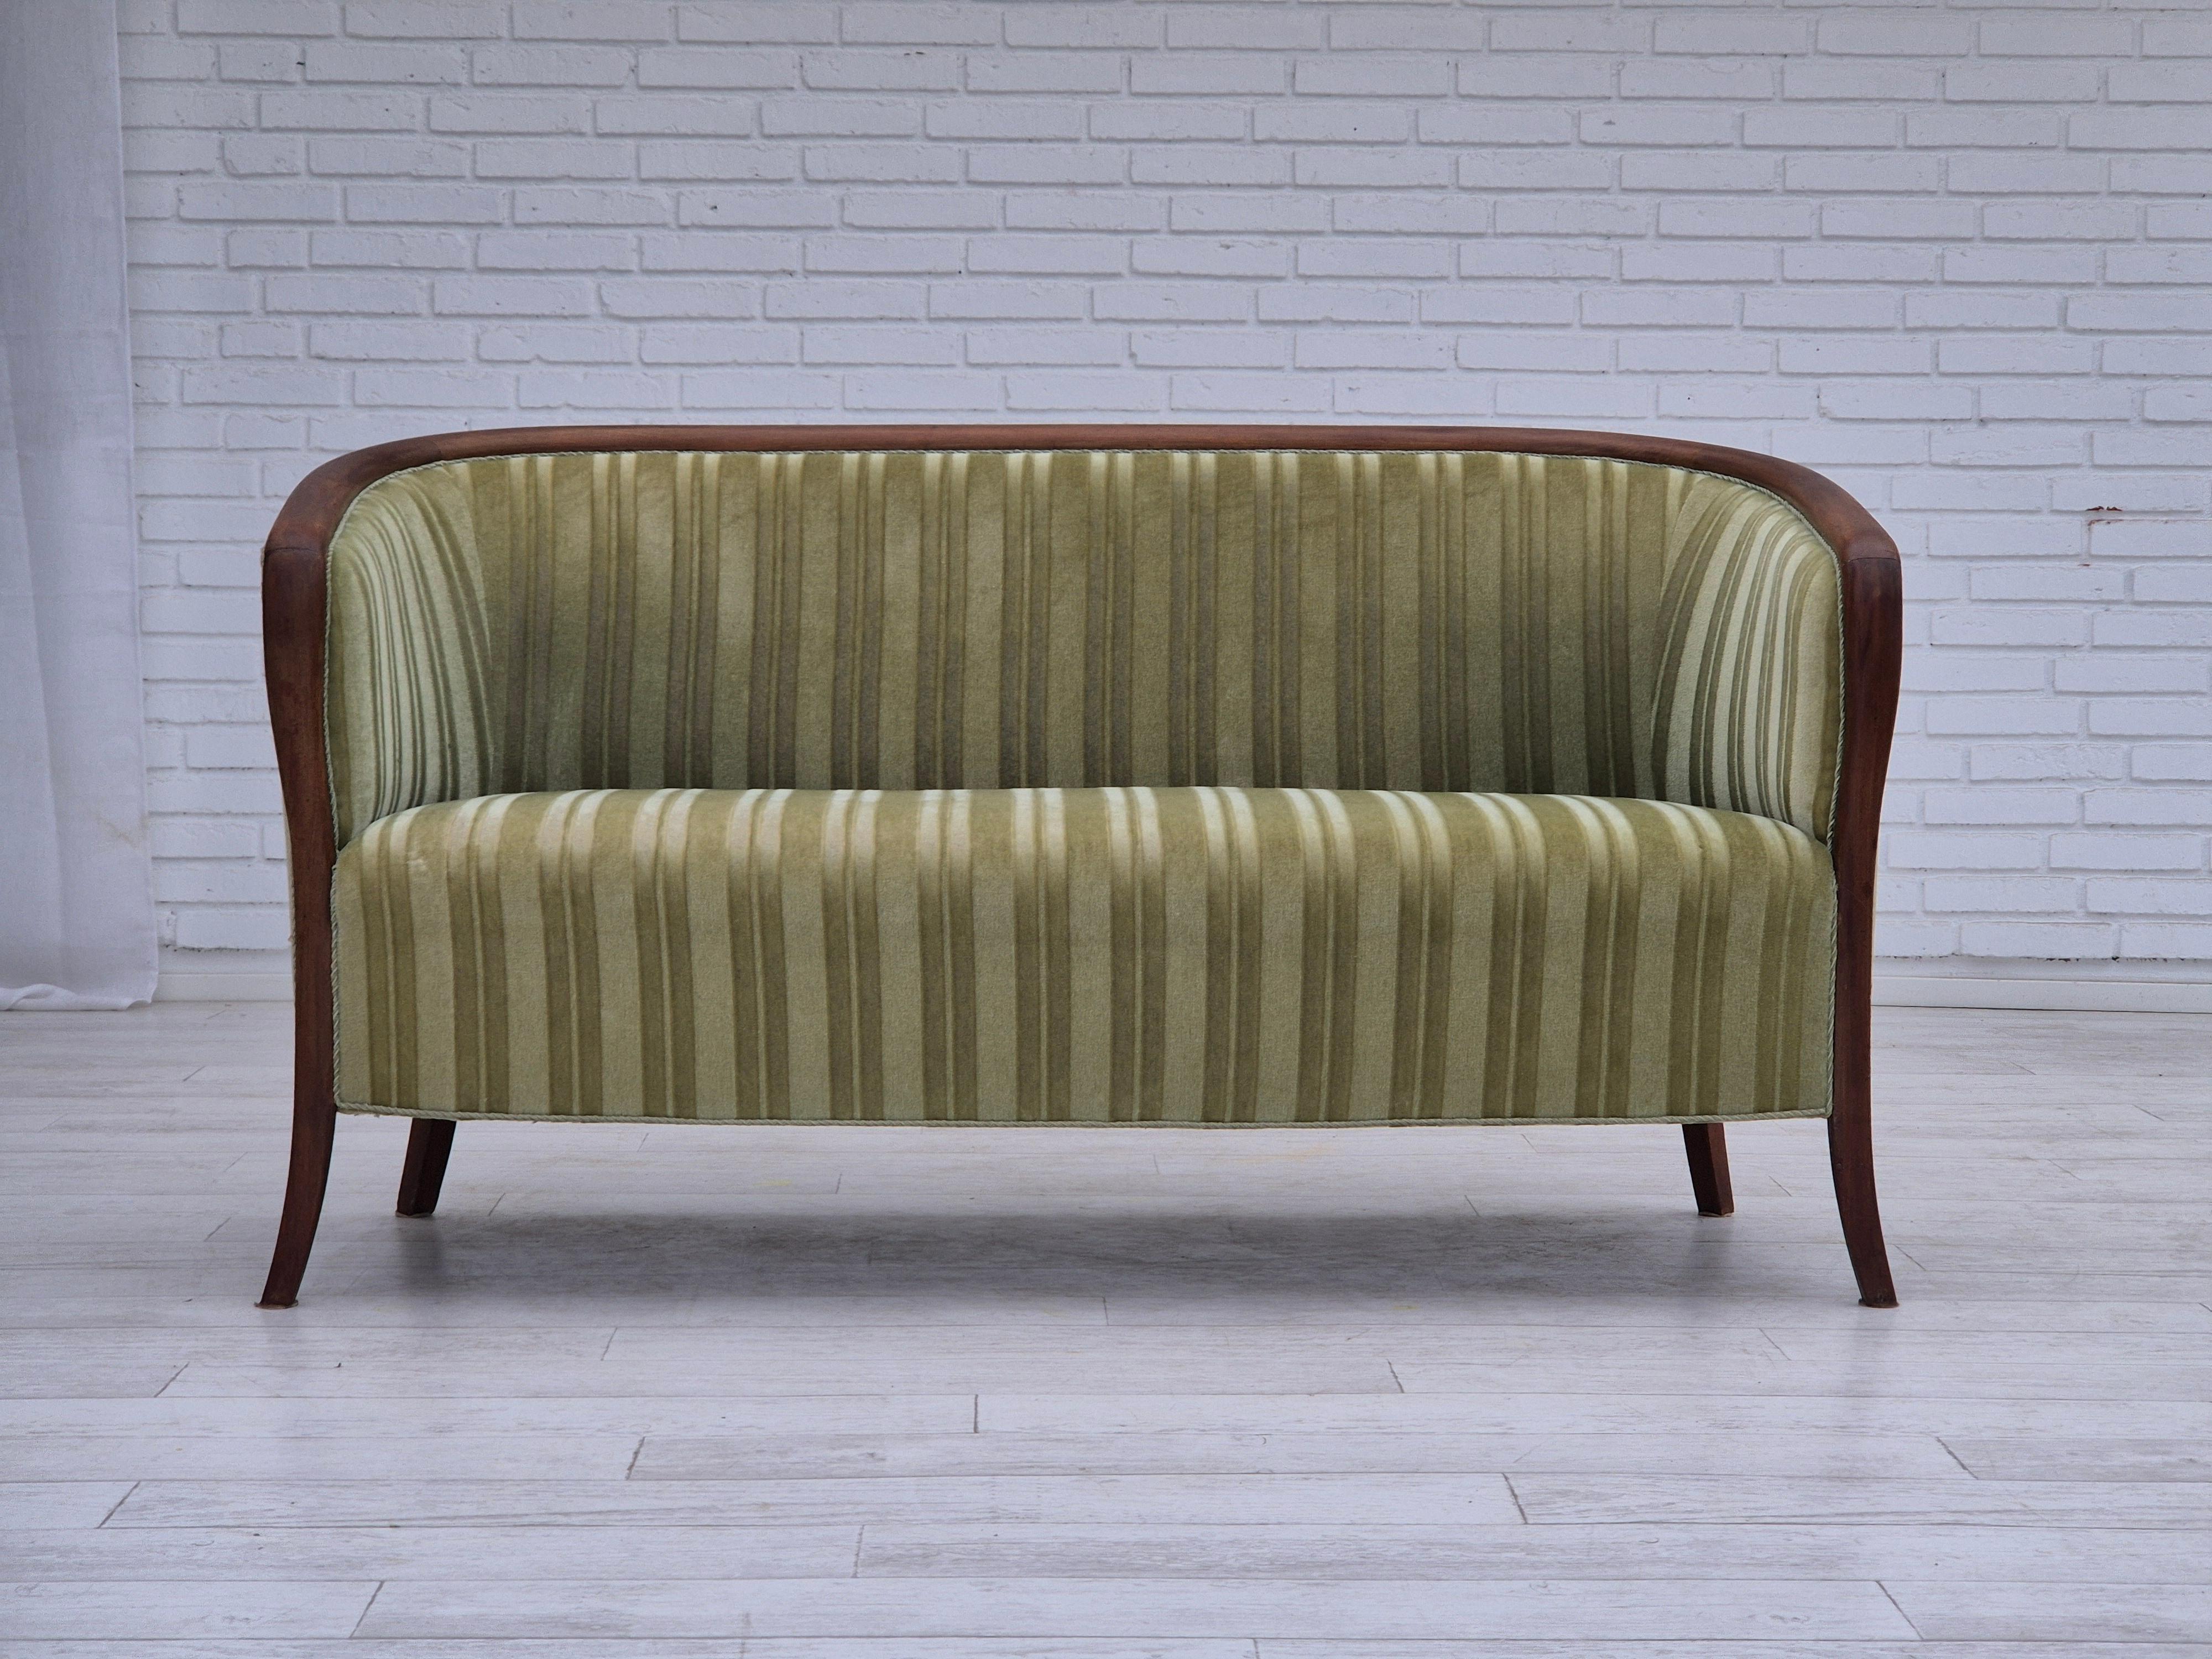 1960s, Scandinavian 2 seater sofa. Très bon état d'origine : pas d'odeurs ni de taches. Velours d'ameublement original vert clair, bois de teck. Ressorts dans le siège. Fabriqué par un fabricant de meubles danois ou suédois dans les années 1955-60.